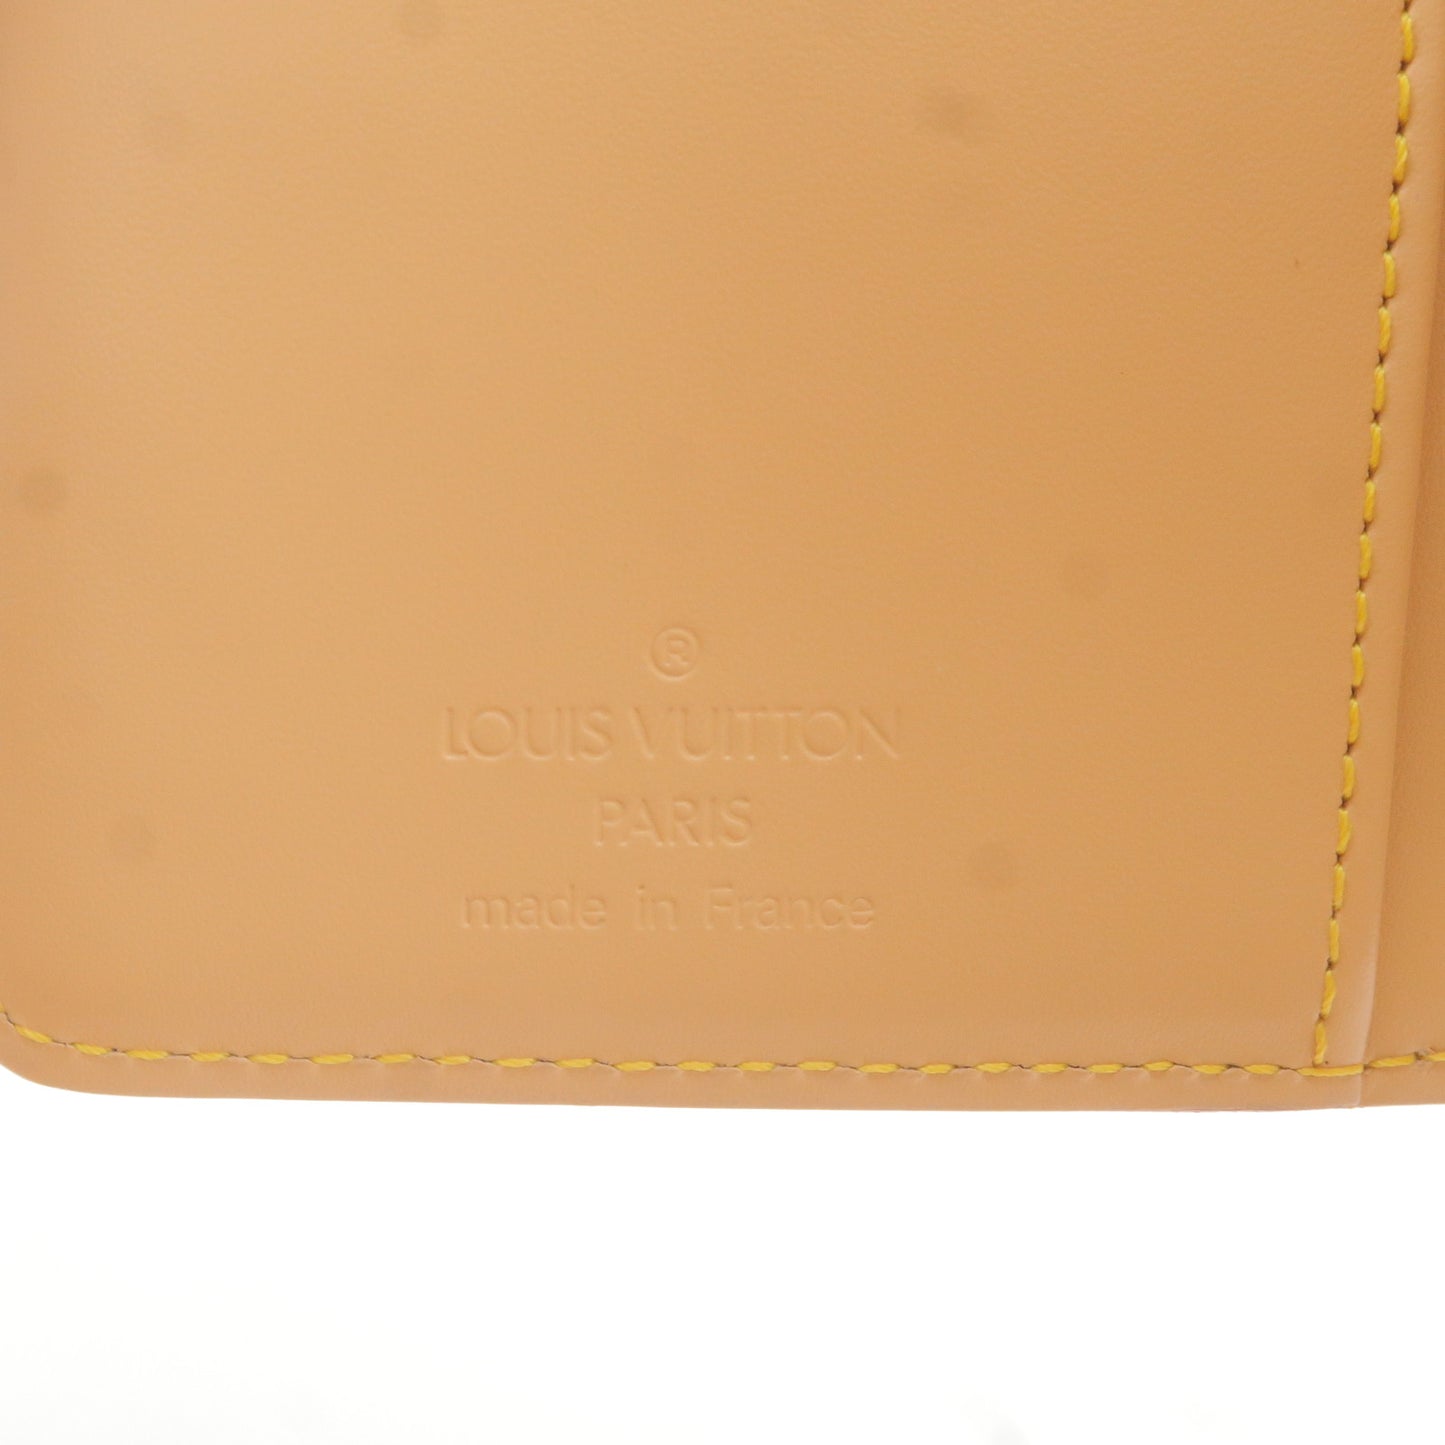 Louis Vuitton Monogram Portefeuille Viennoi Multi ColorM92988